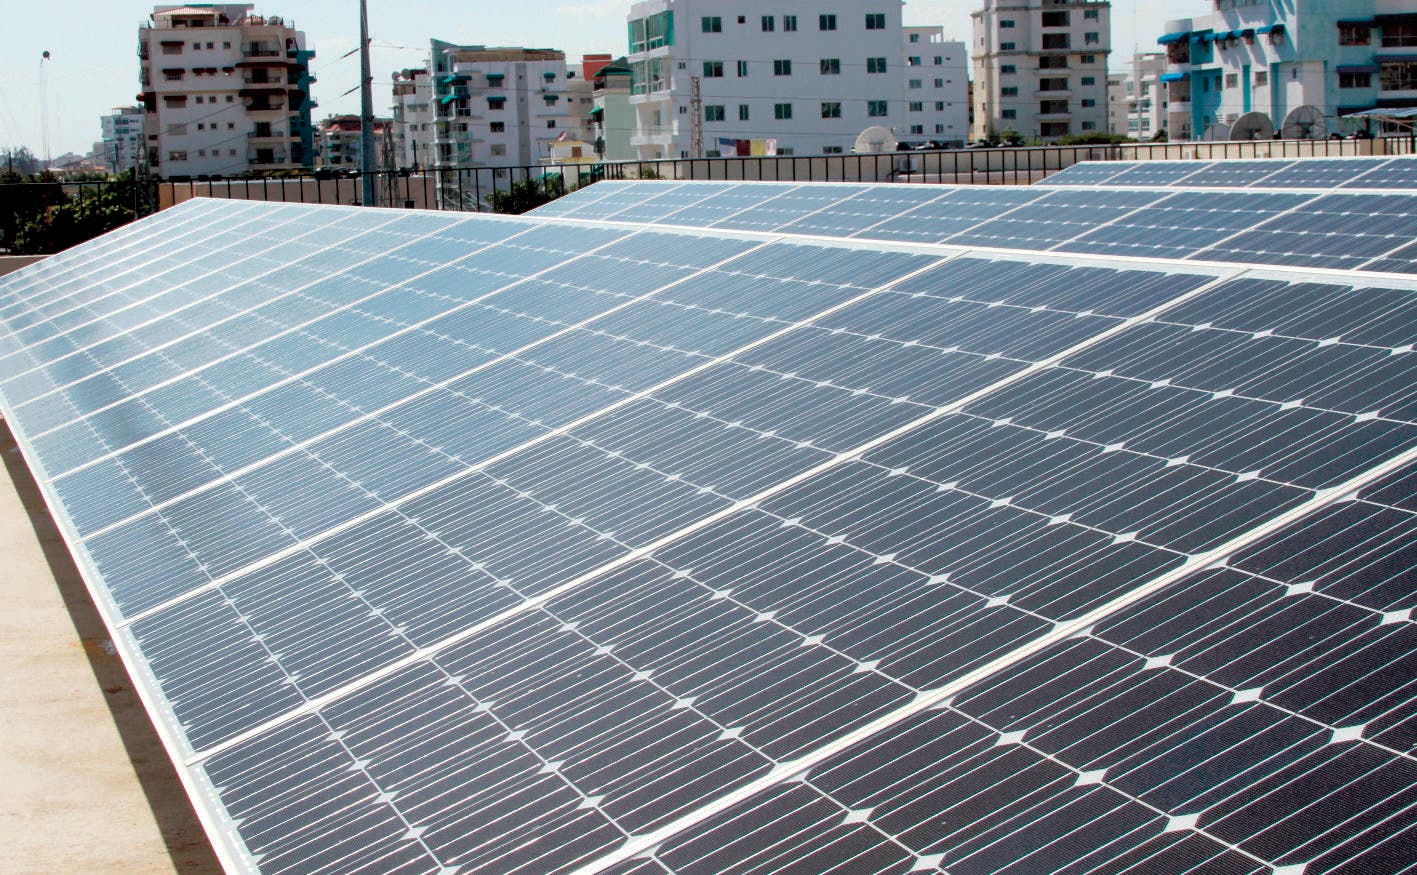 Propone plan instalación de energía solar en el país